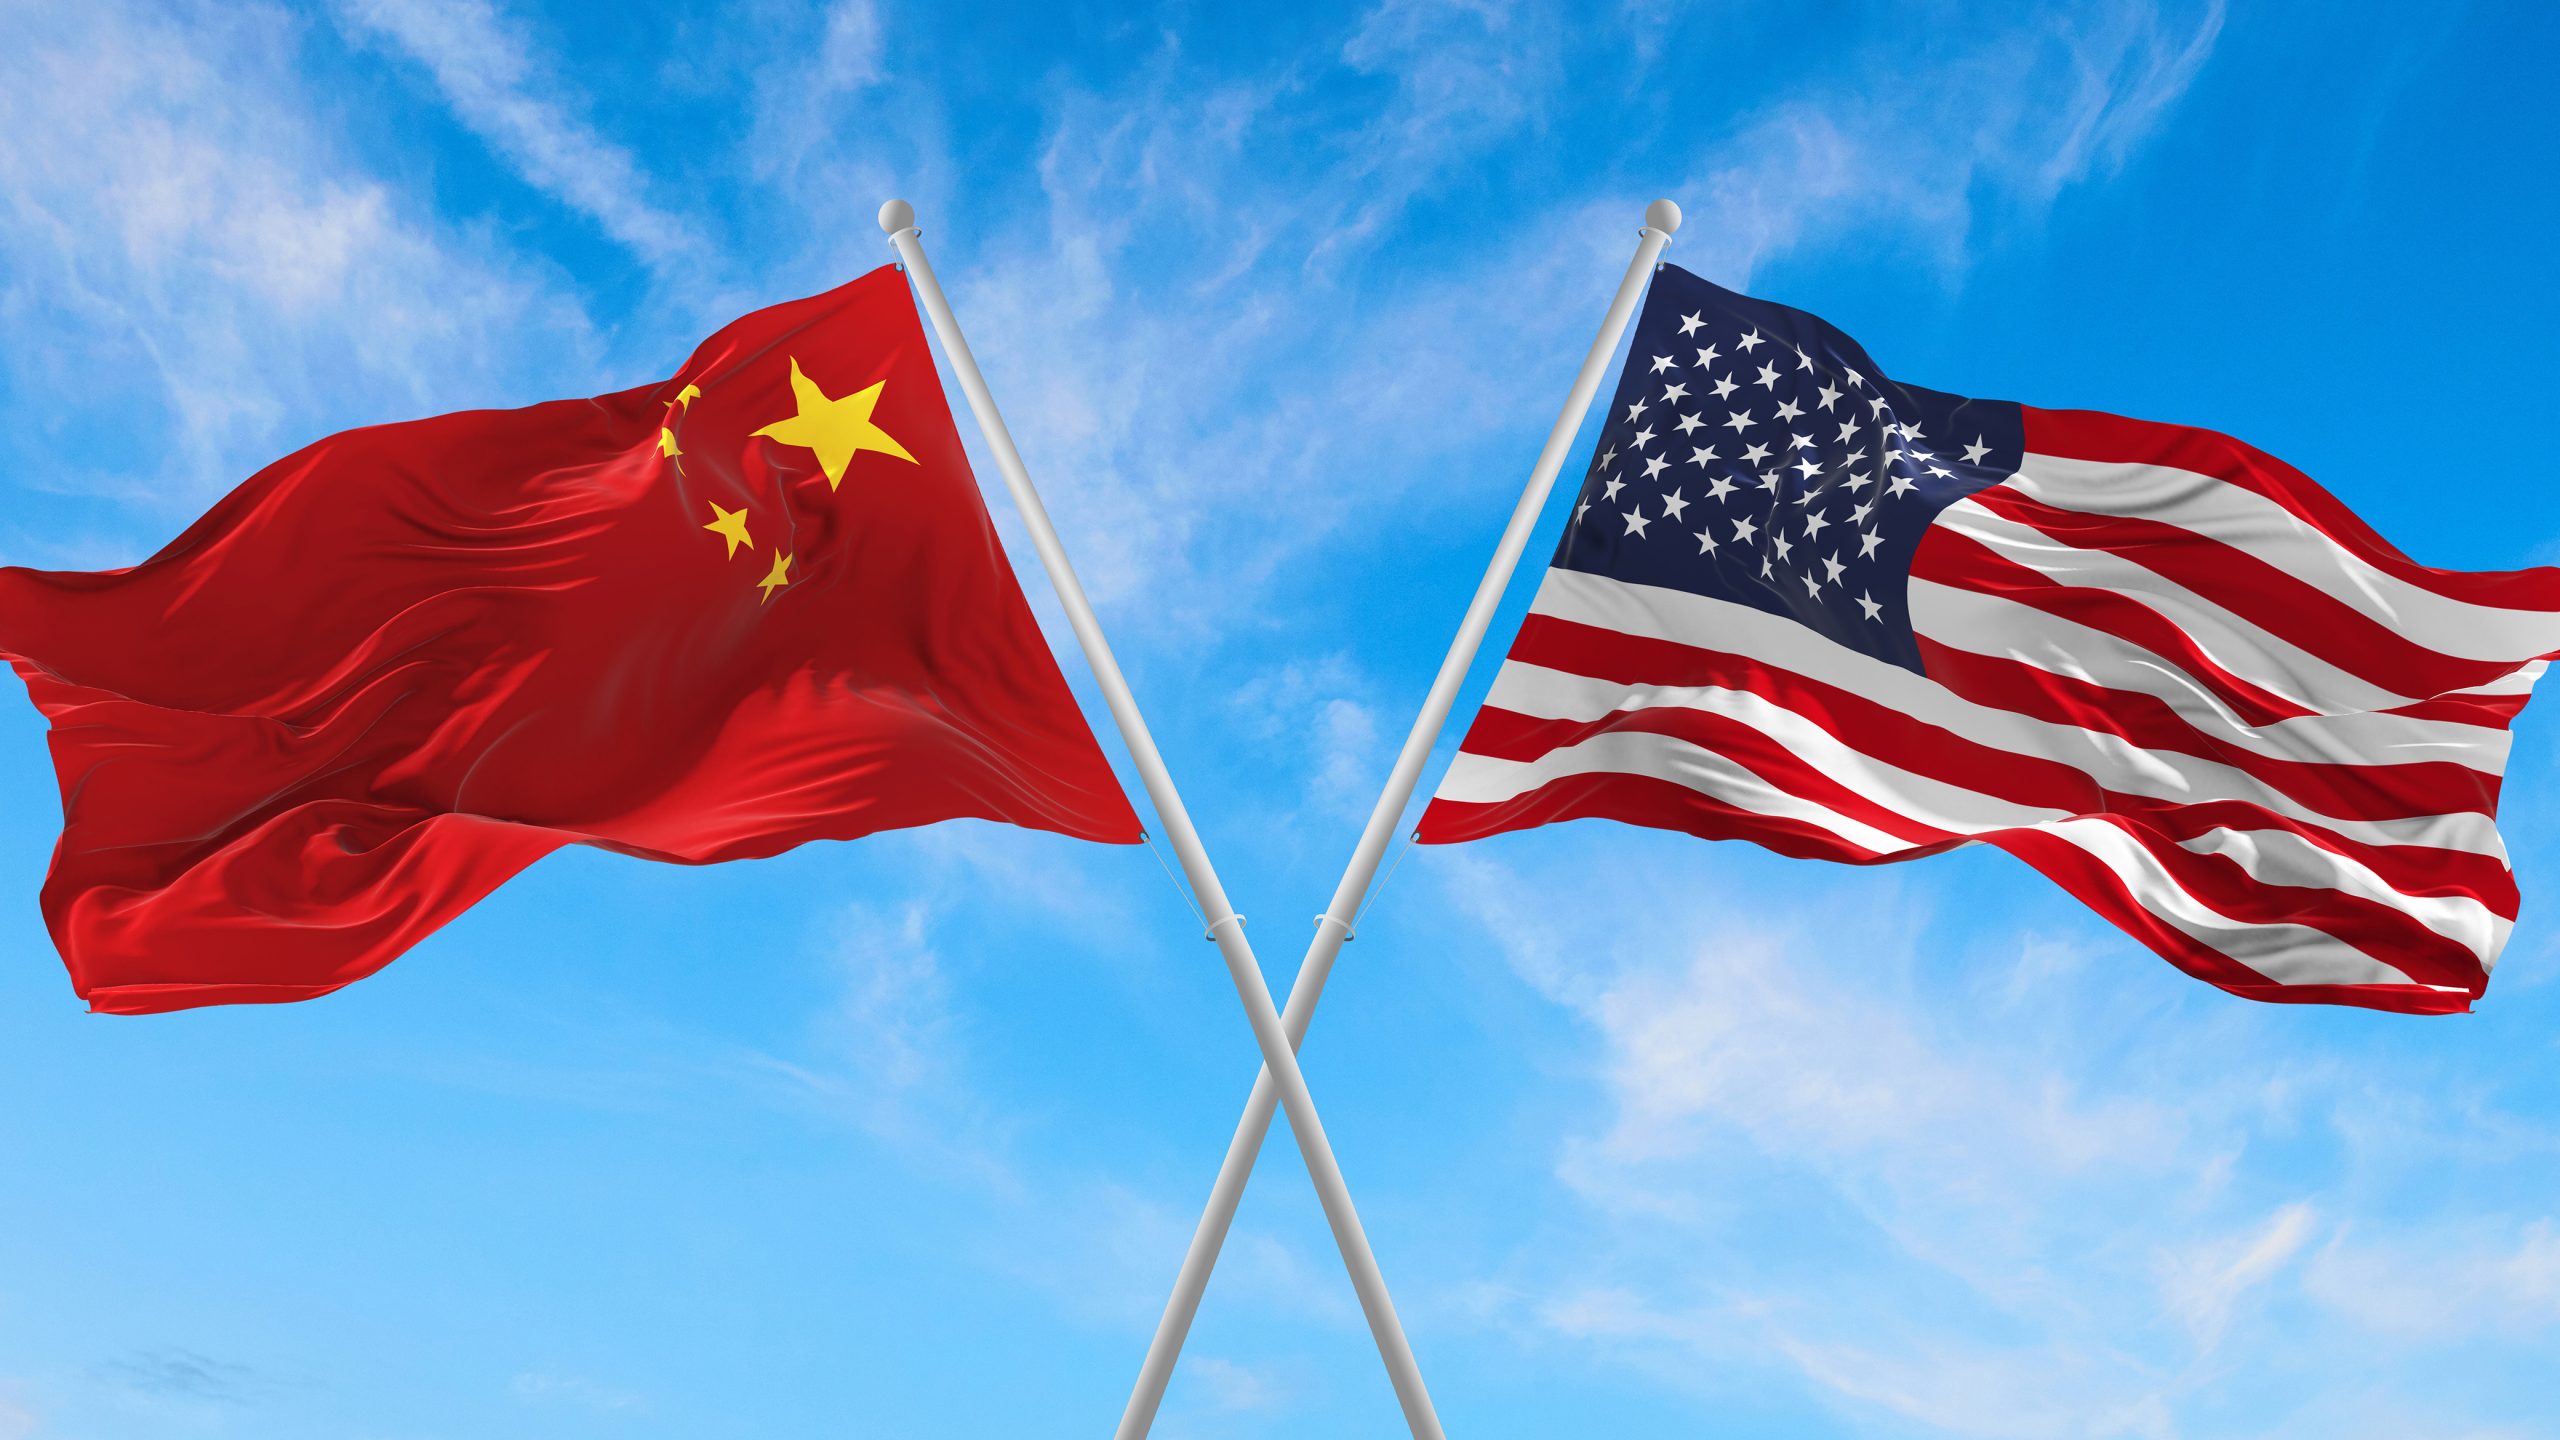 China and USA